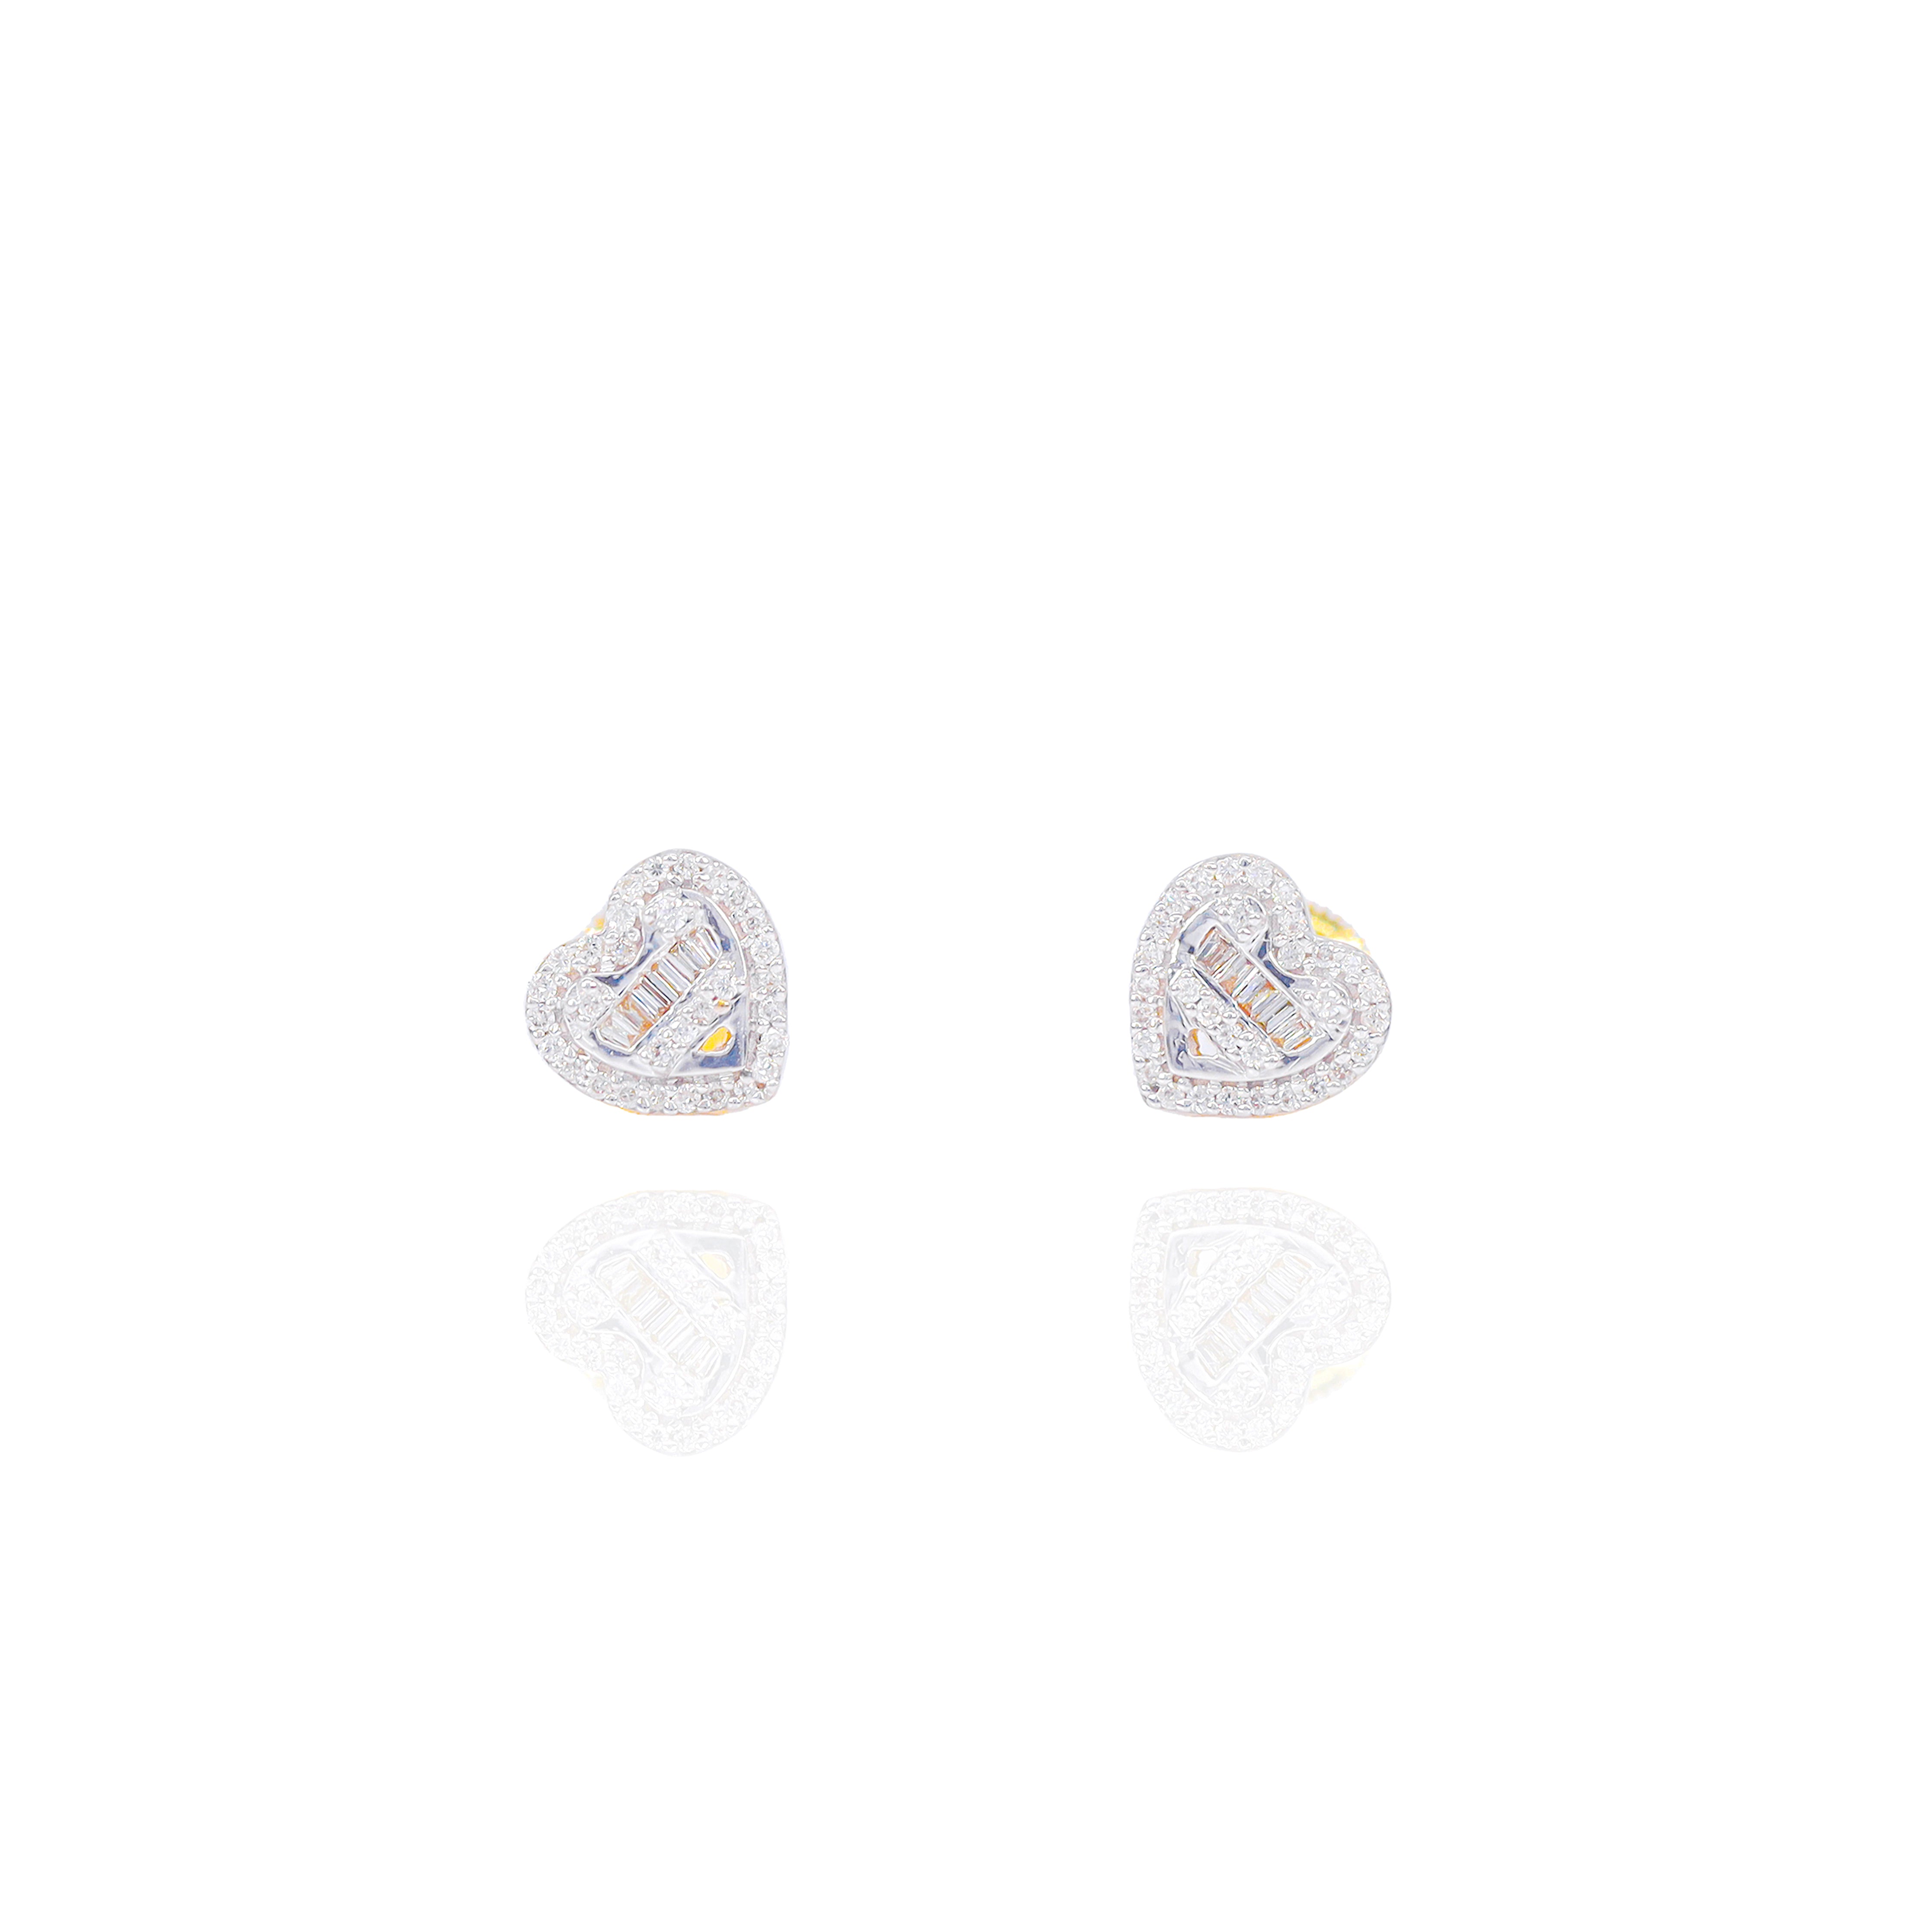 Heart Shaped Diamond Earrings w/ Baguette Center